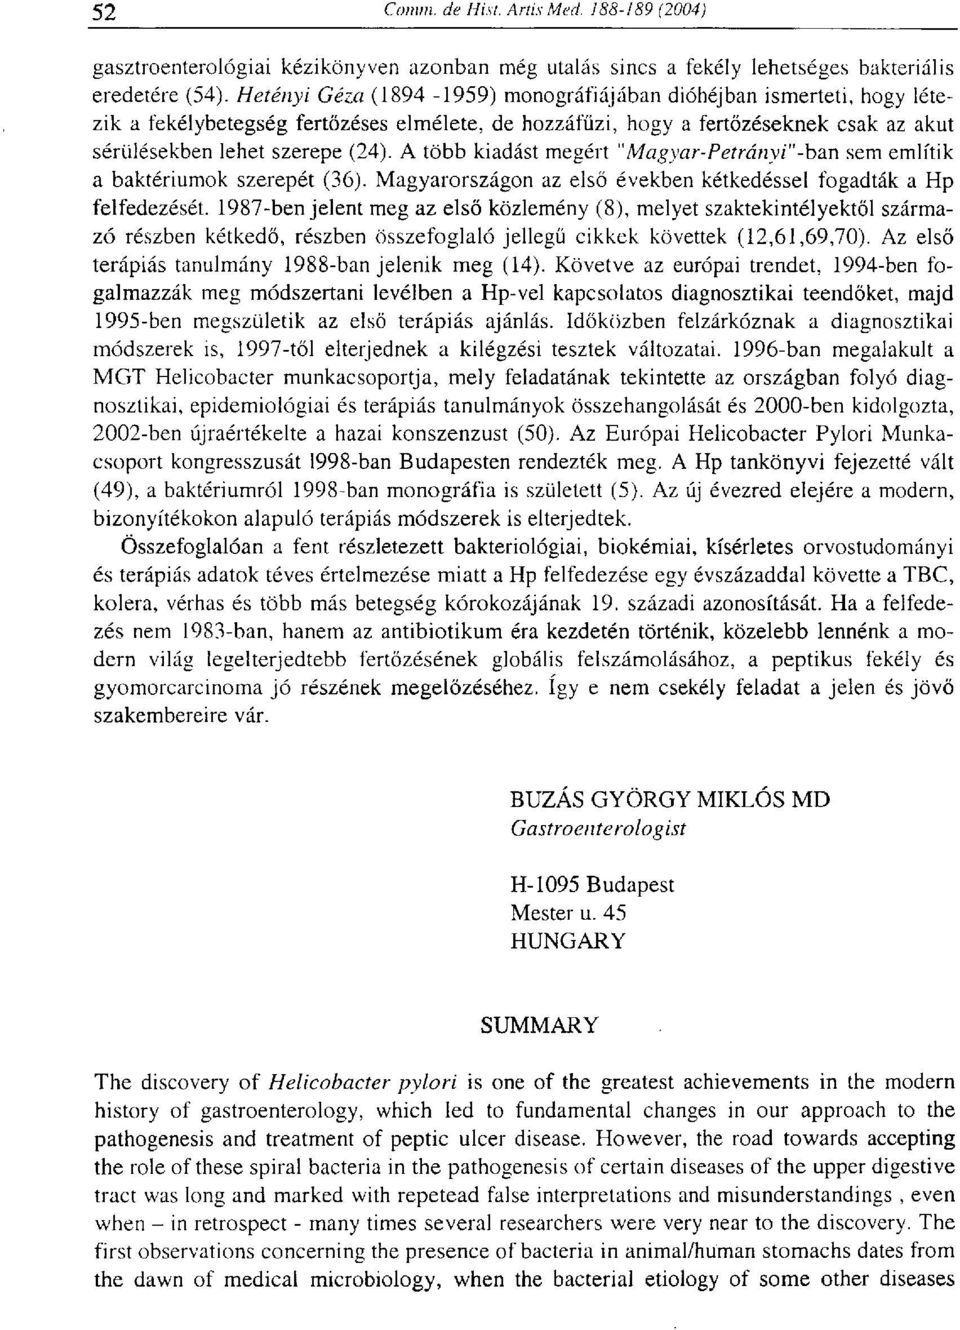 A több kiadást megért "M'agyar-Petrányi"'-ban sem említik a baktériumok szerepét (36). Magyarországon az első években kétkedéssel fogadták a Hp felfedezését.